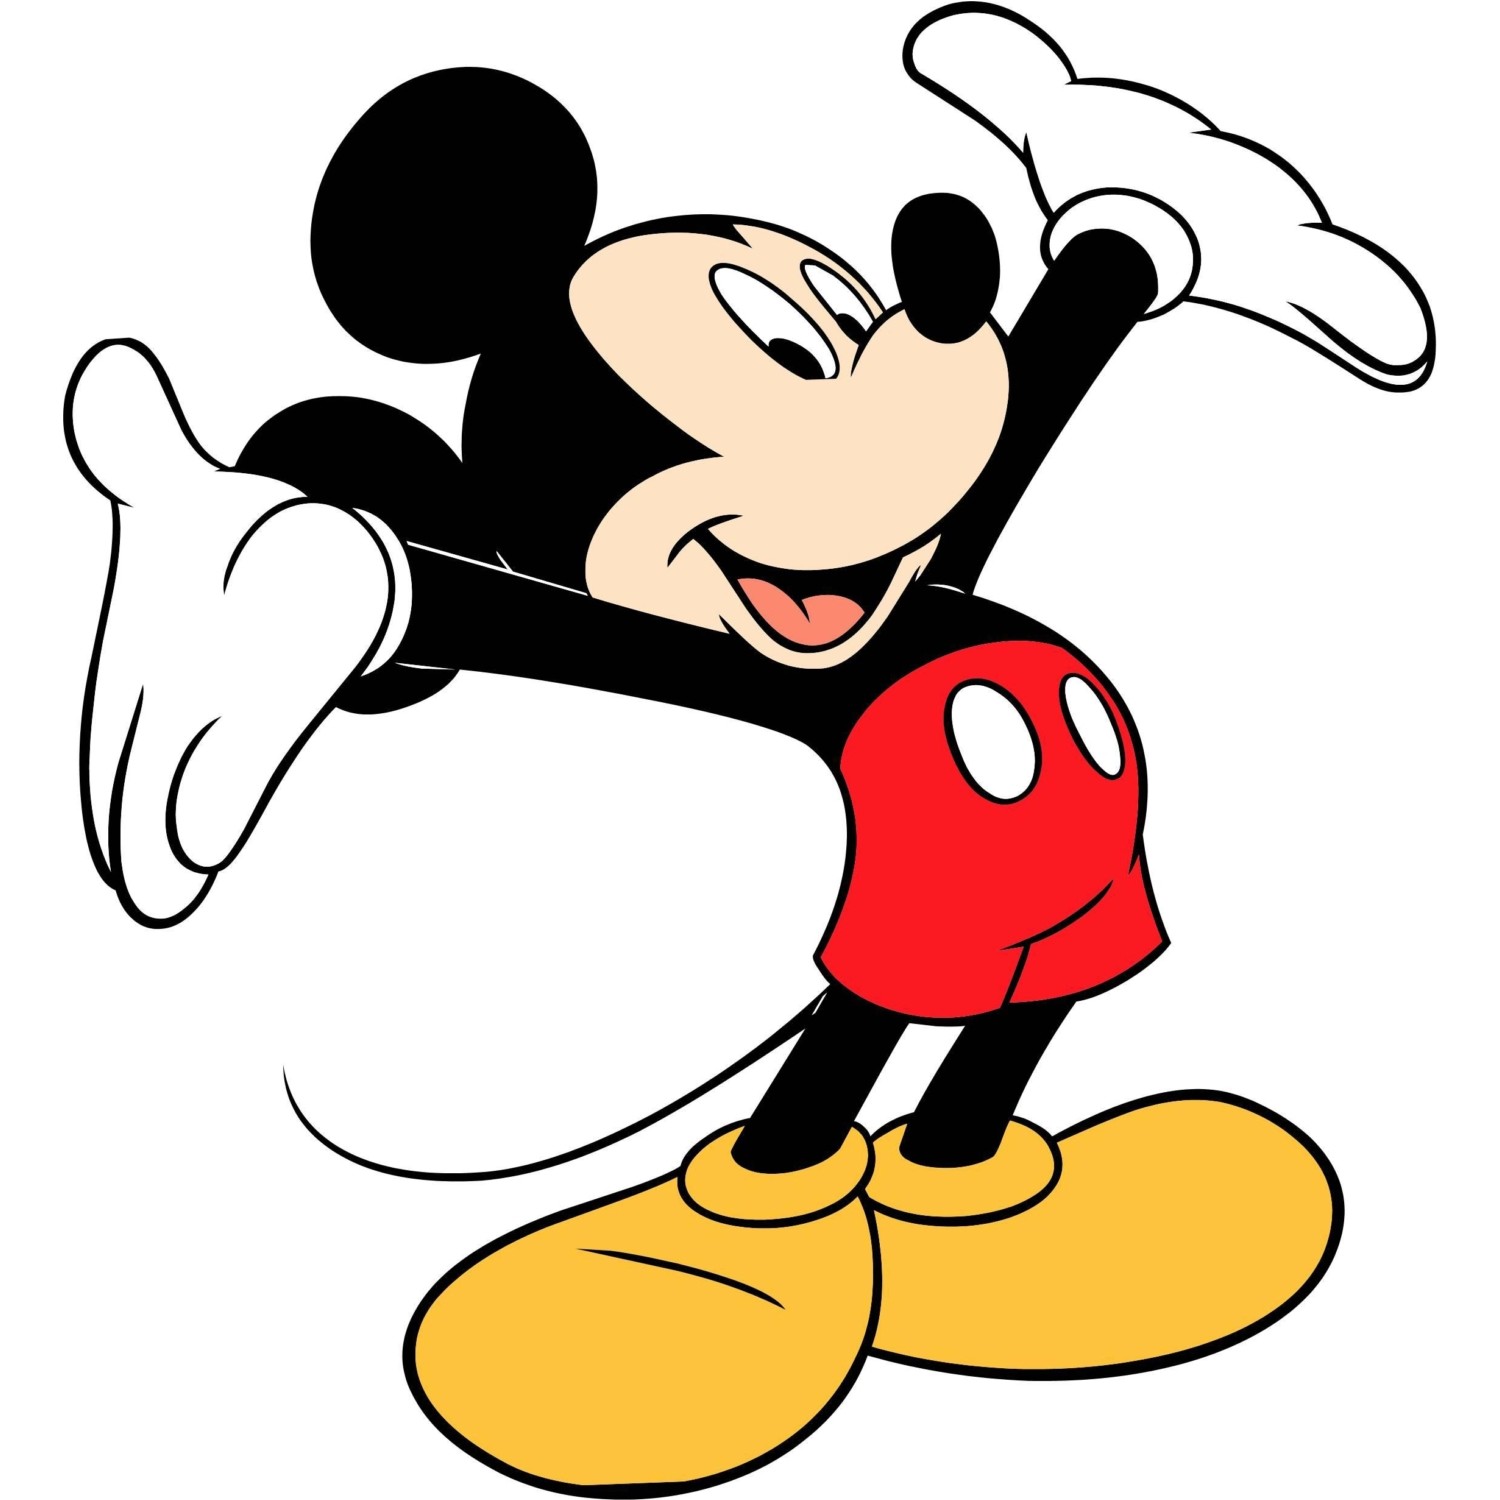 Eso Sangriento más Disney Mickey Mouse Sevimli Peluş 28 Cm Fiyatı - Taksit Seçenekleri